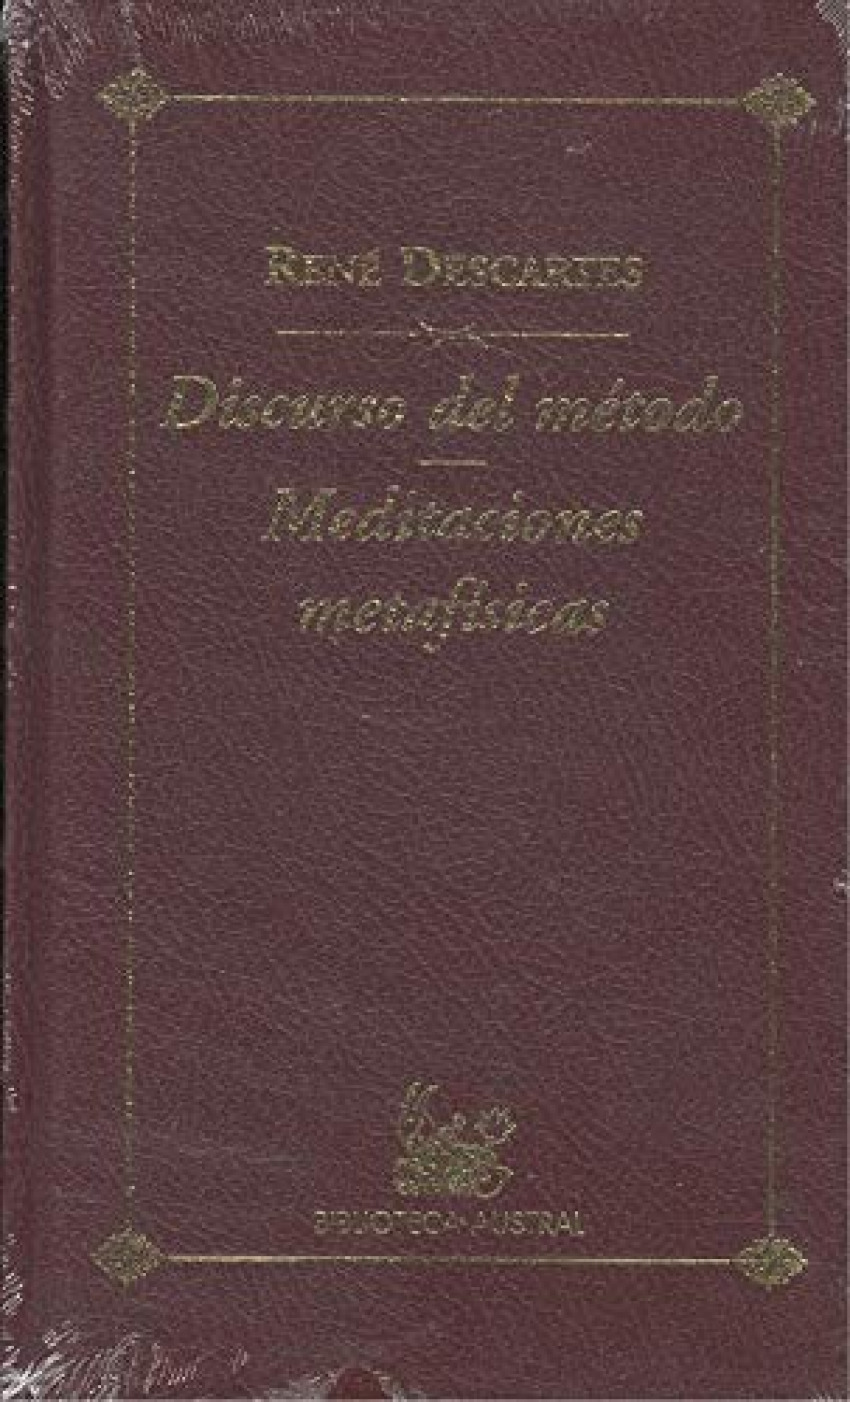 Discurso del metodo / meditaciones metafisicas - Descartes, Rene